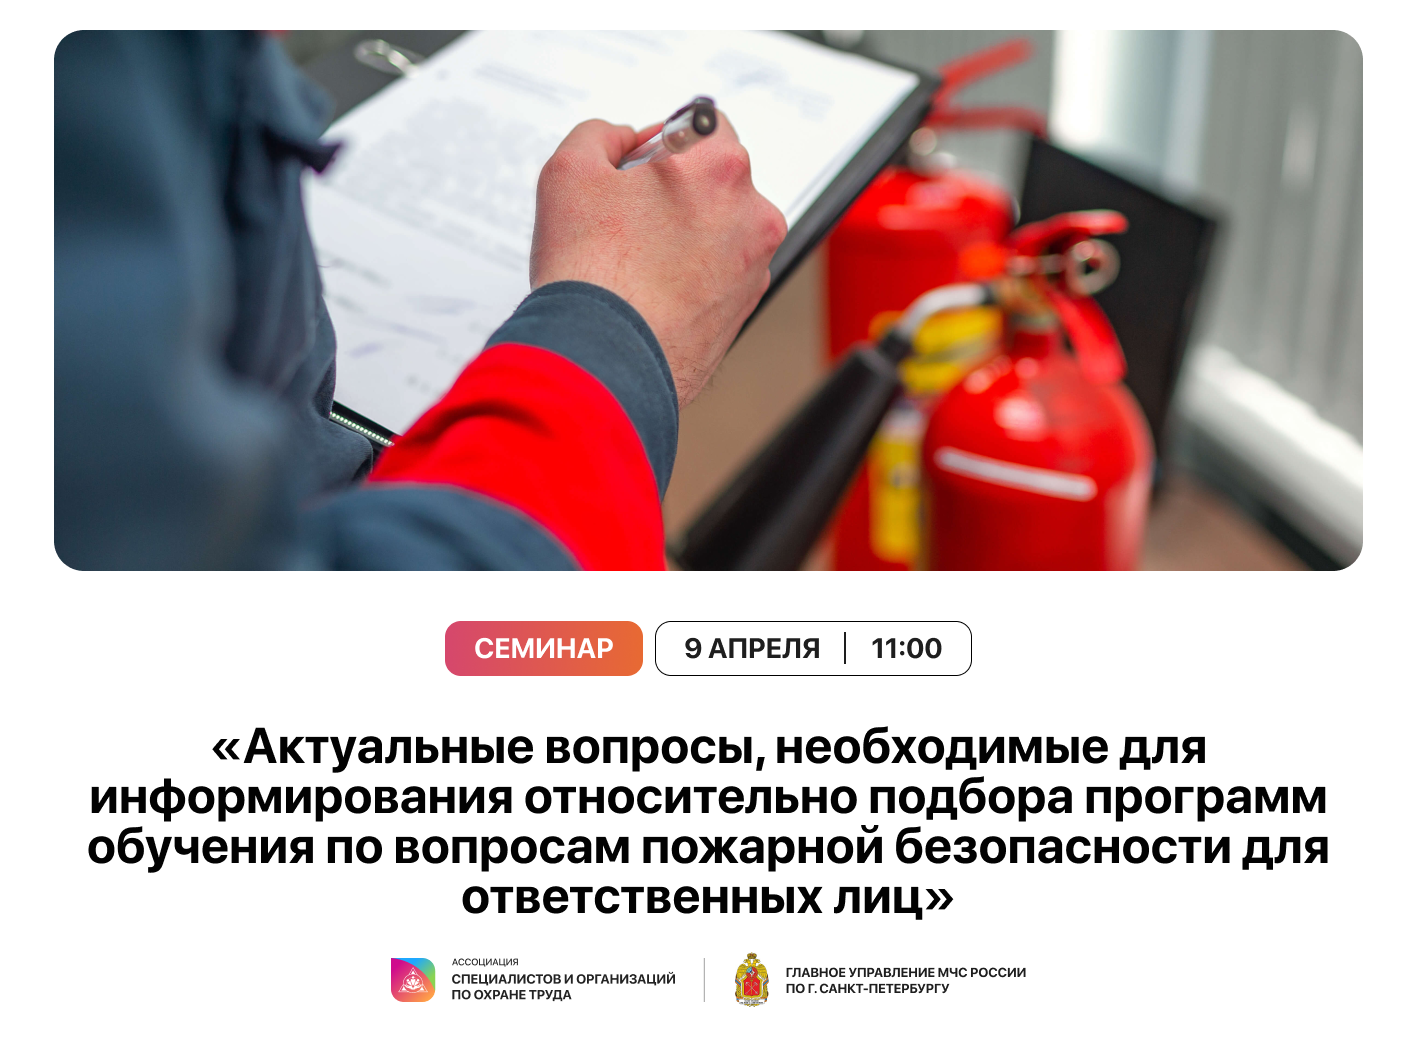 Актуальные вопросы, необходимые для информирования относительно подбора программ обучения по вопросам пожарной безопасности для ответственных лиц